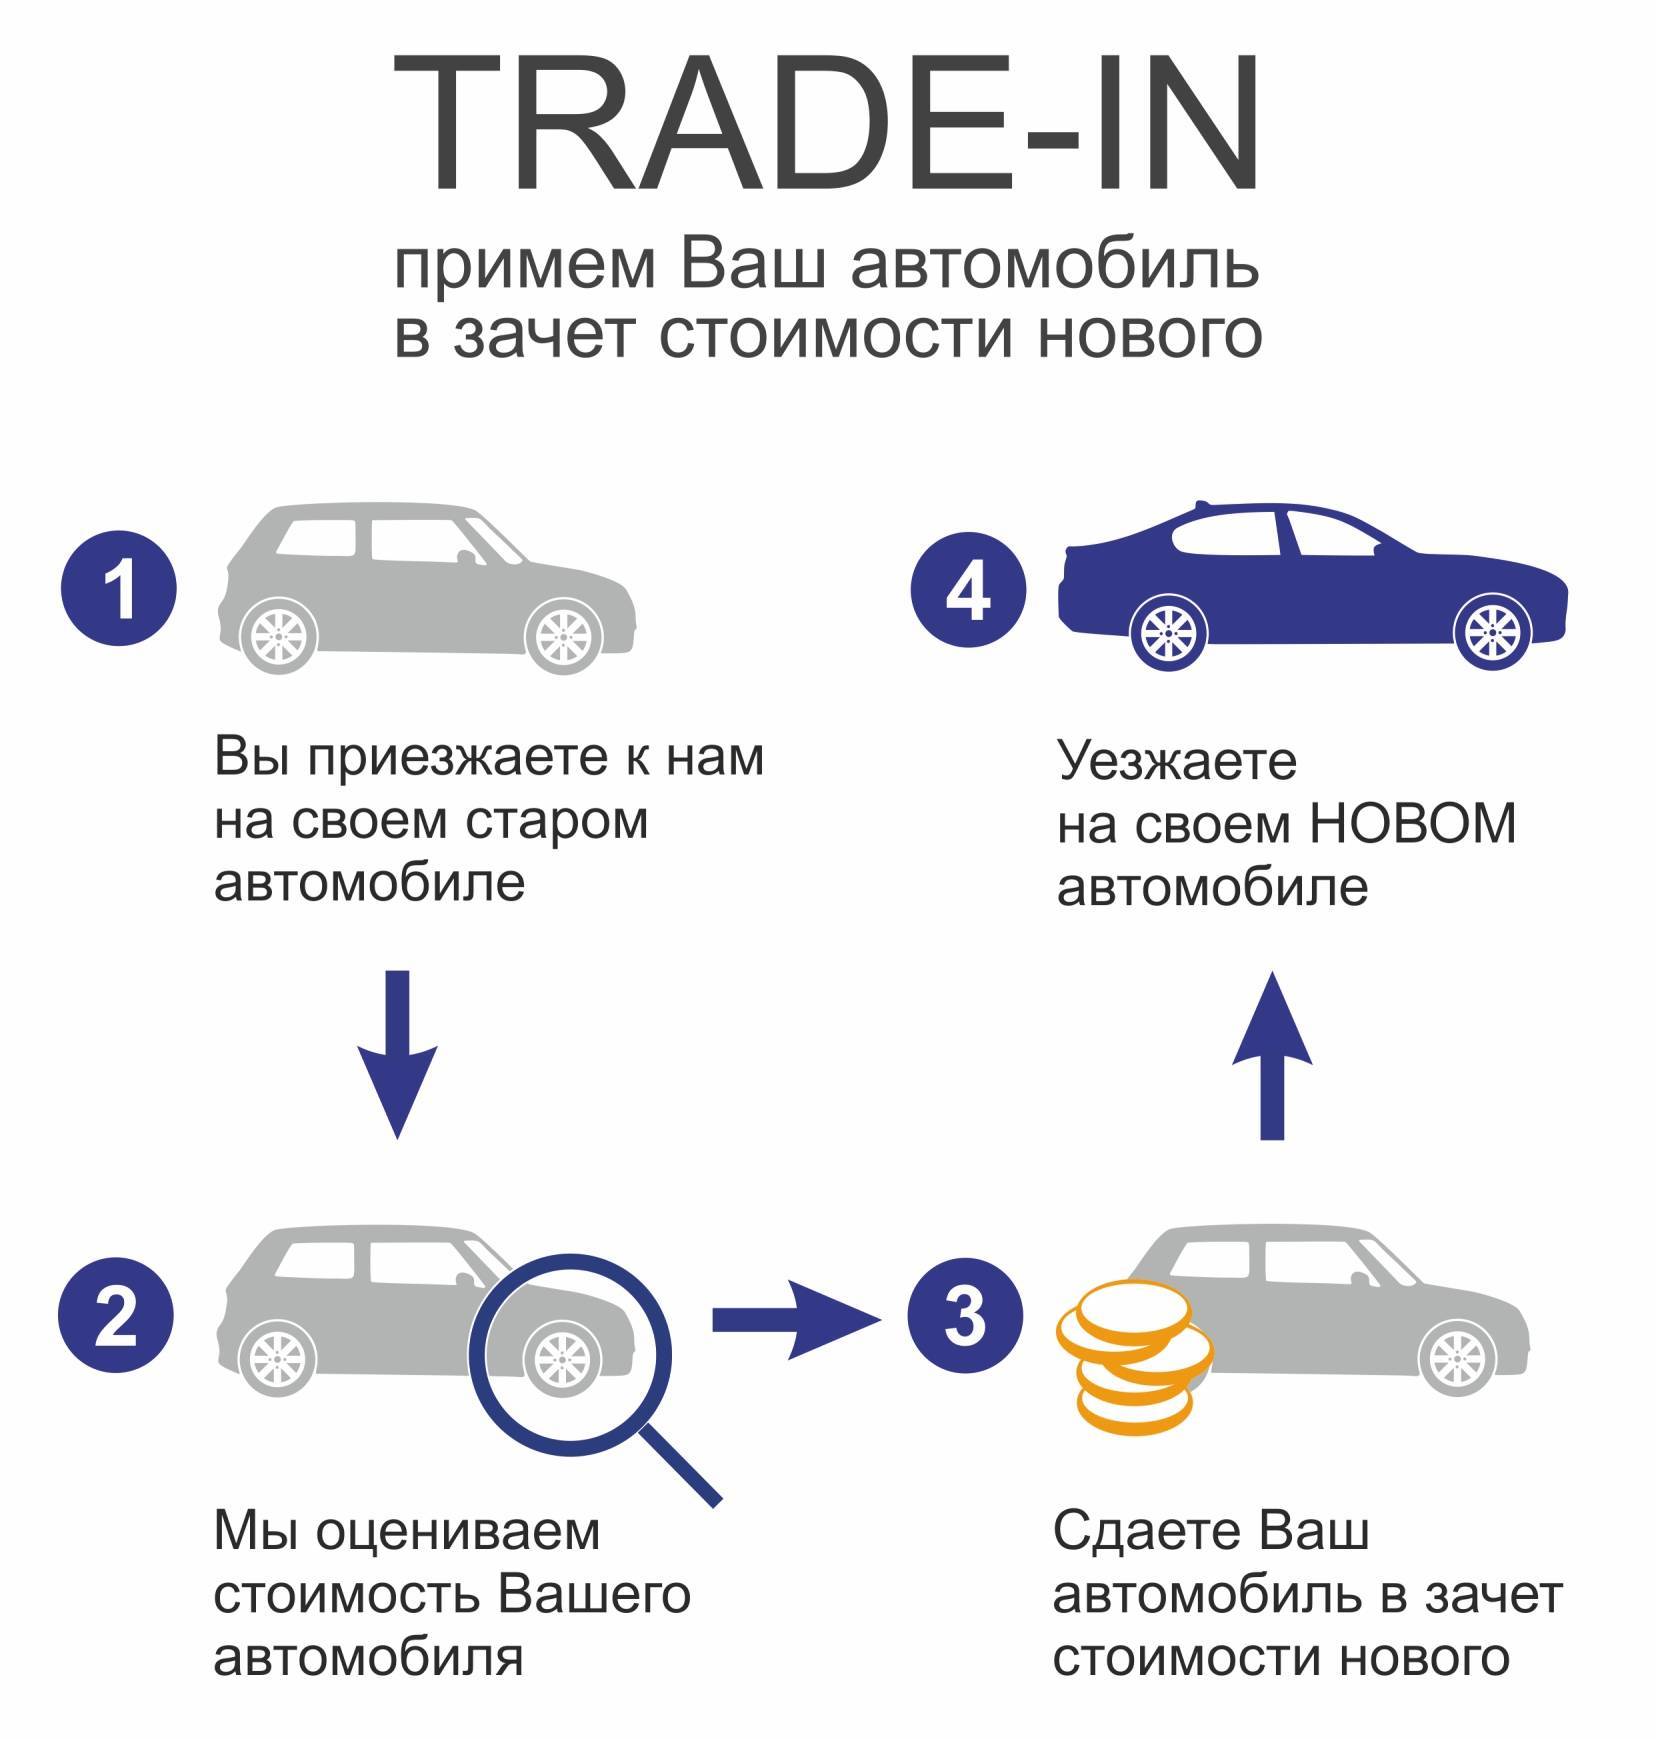 Обман в автосалонах: как продают машины c пробегом в Trade-in